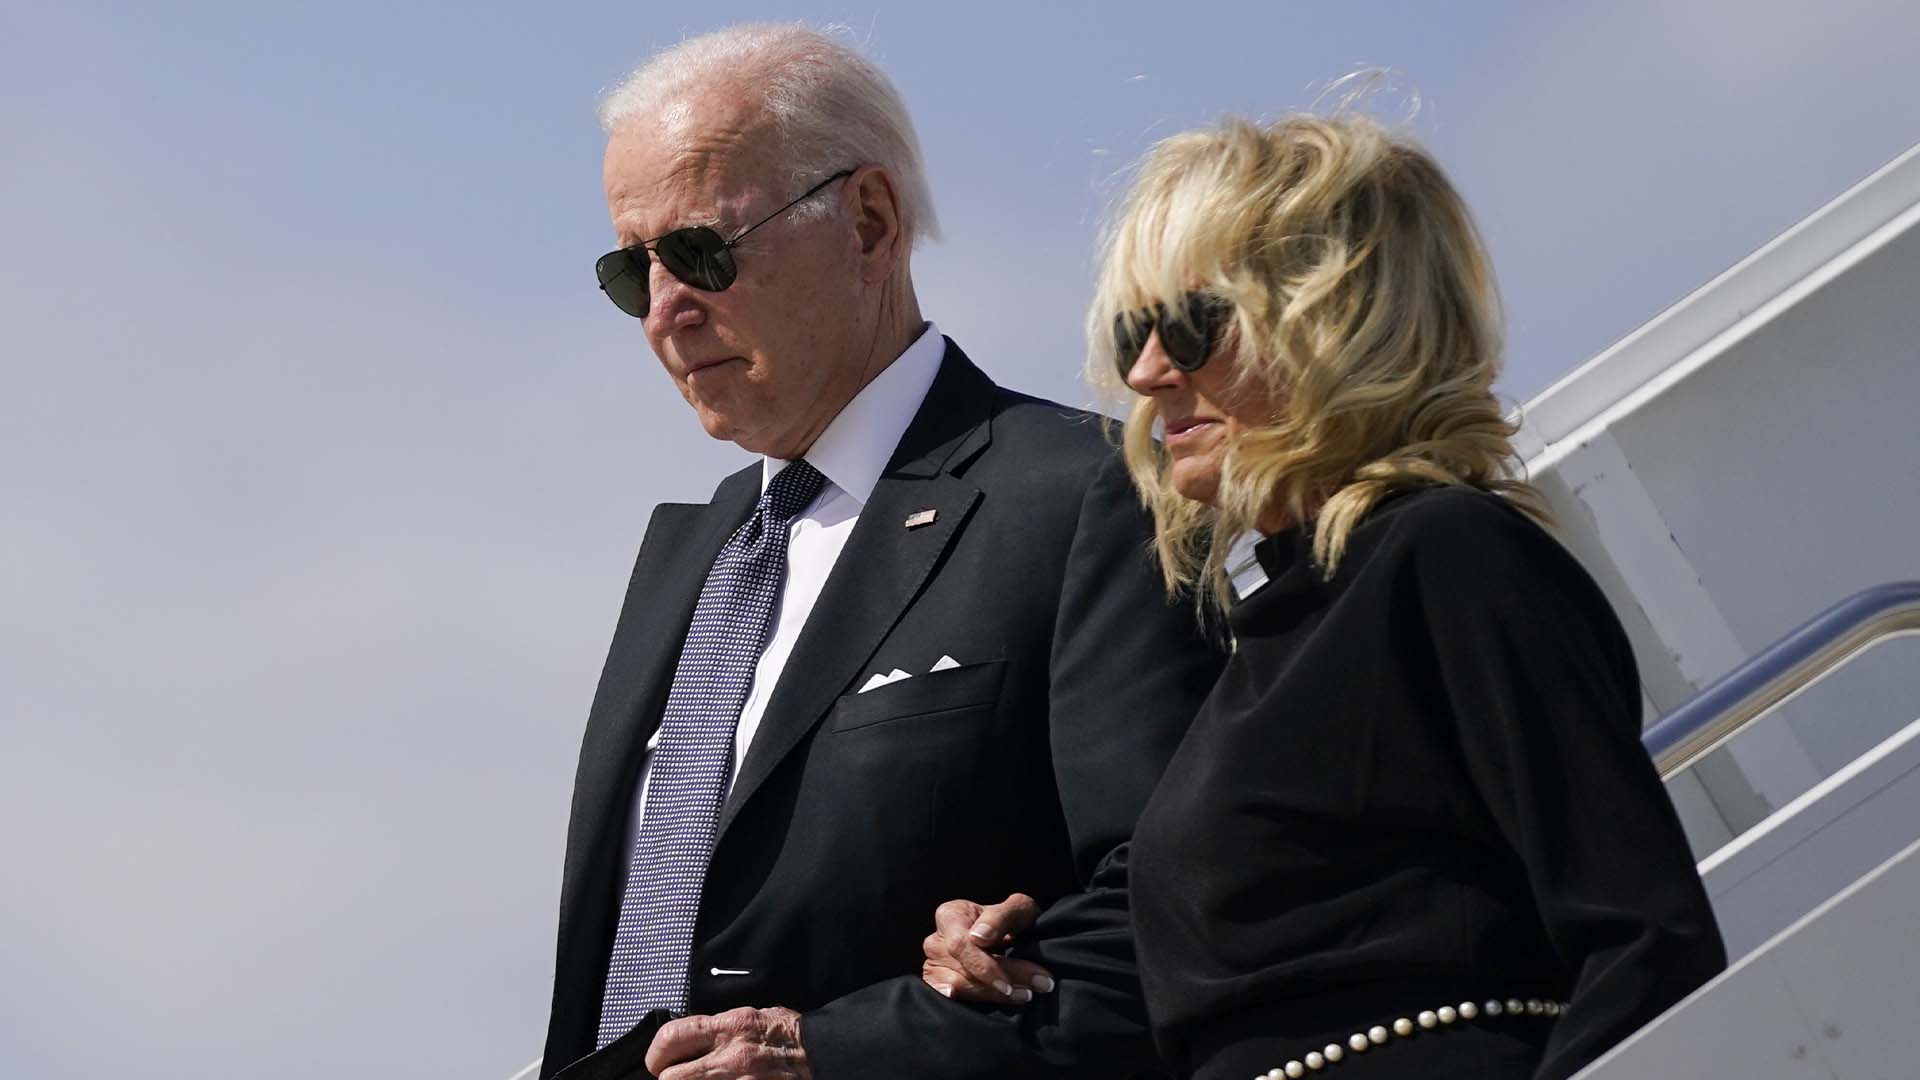 Le président américain, Joe Biden, est de passage au Texas, dimanche, afin de donner ses condoléances aux familles et amis des victimes de la tuerie d’Uvalde, qui a fait 21 morts, dont 19 enfants.